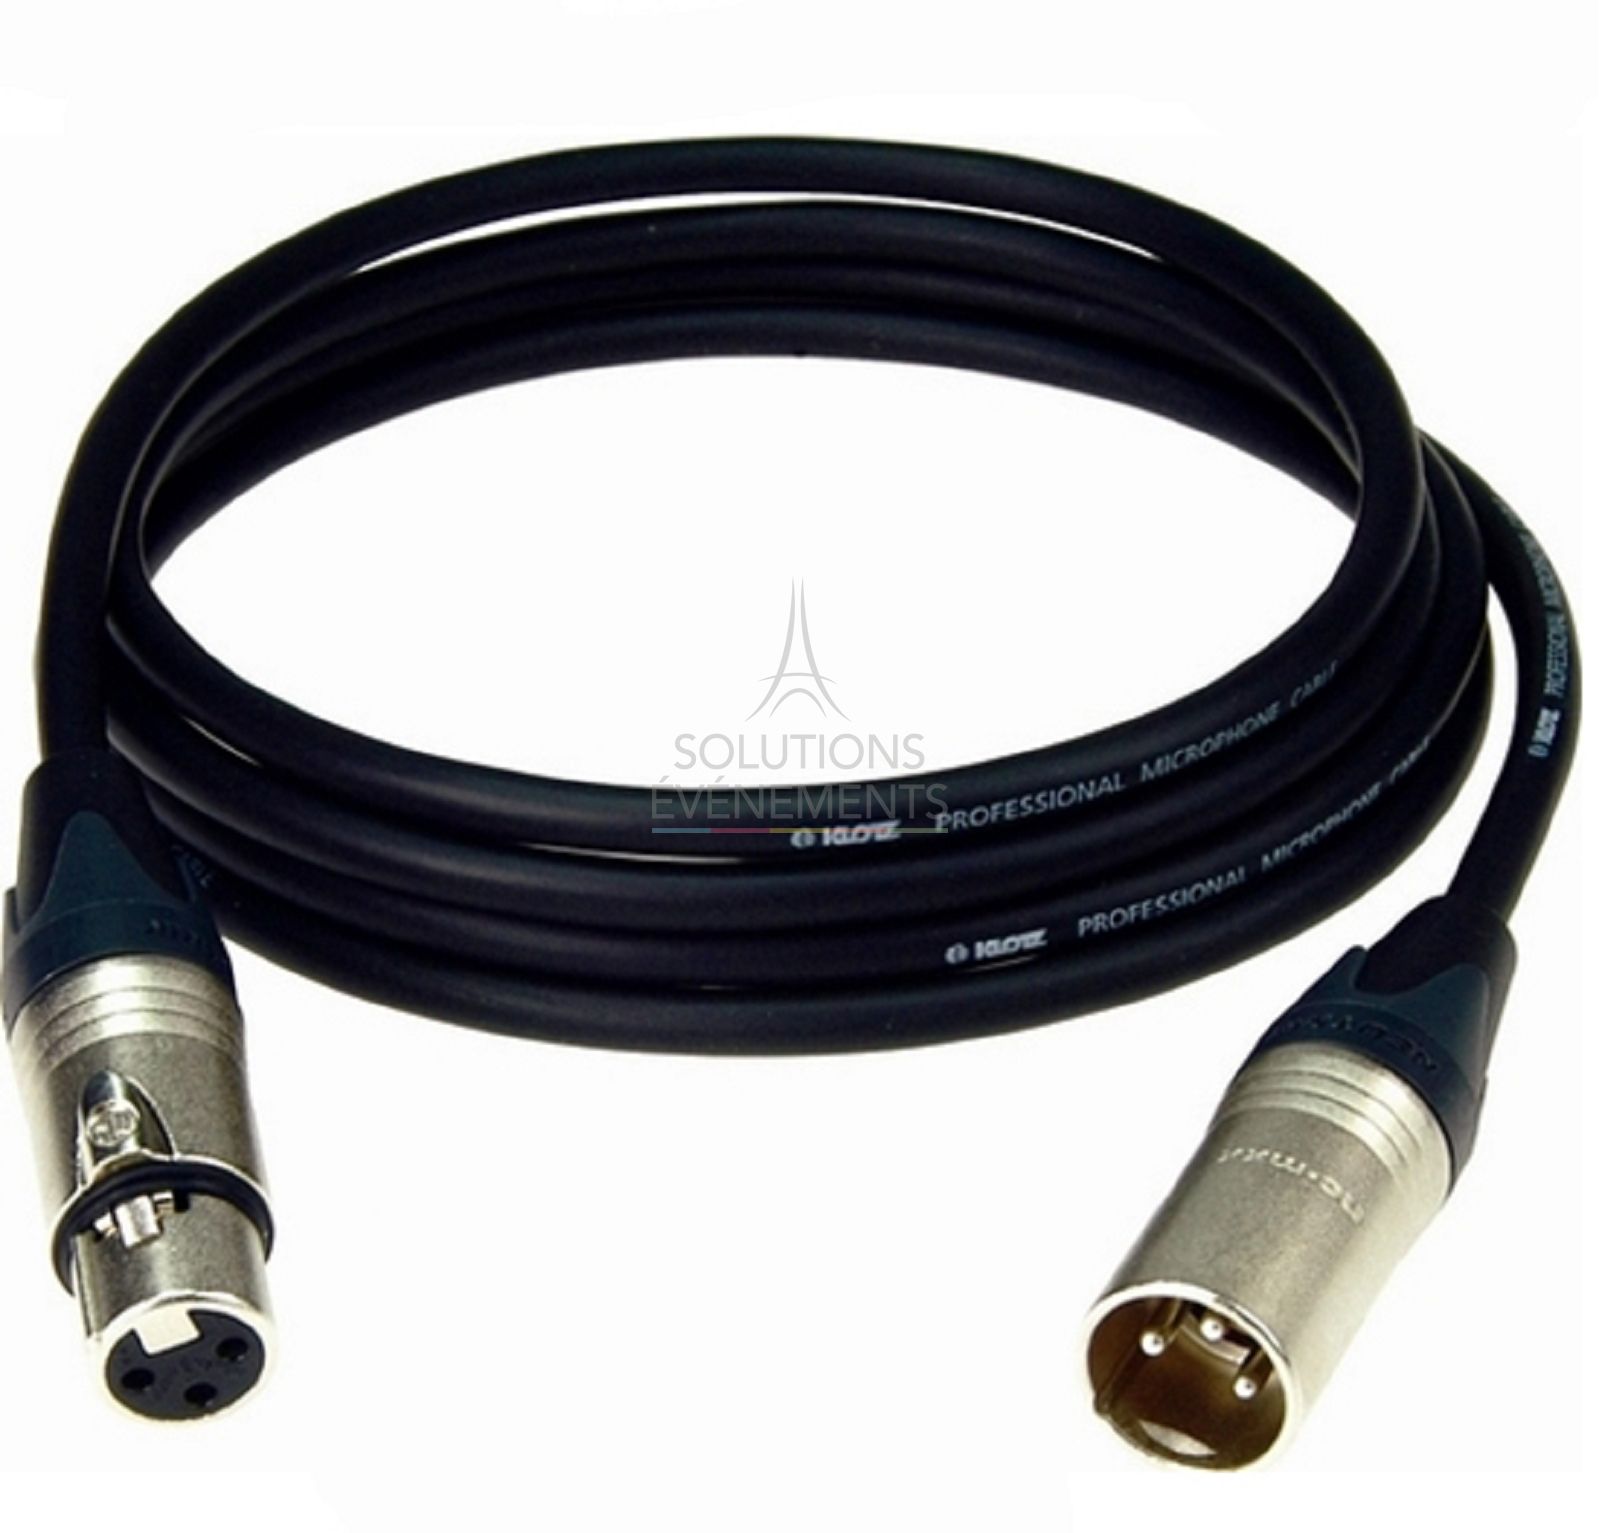 Xlr/xlr audio cable rental